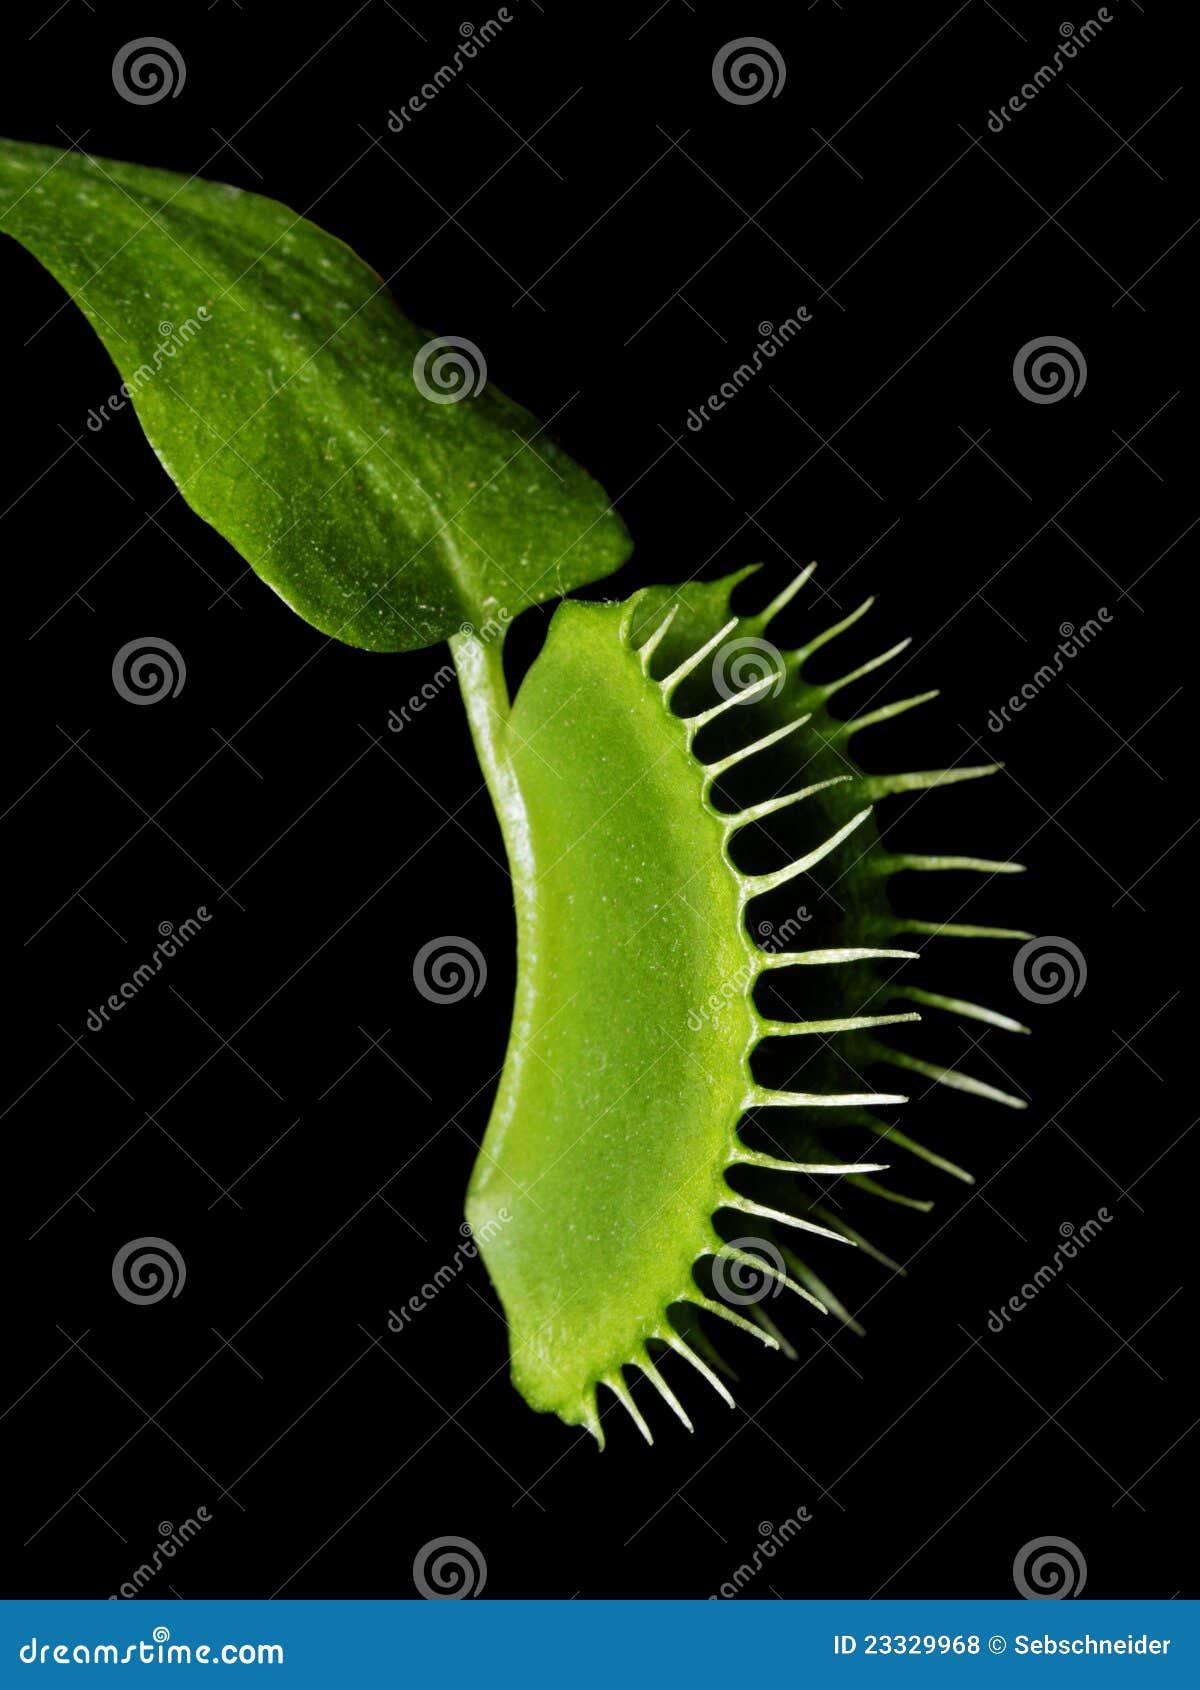 venus flytrap - dionaea muscipula